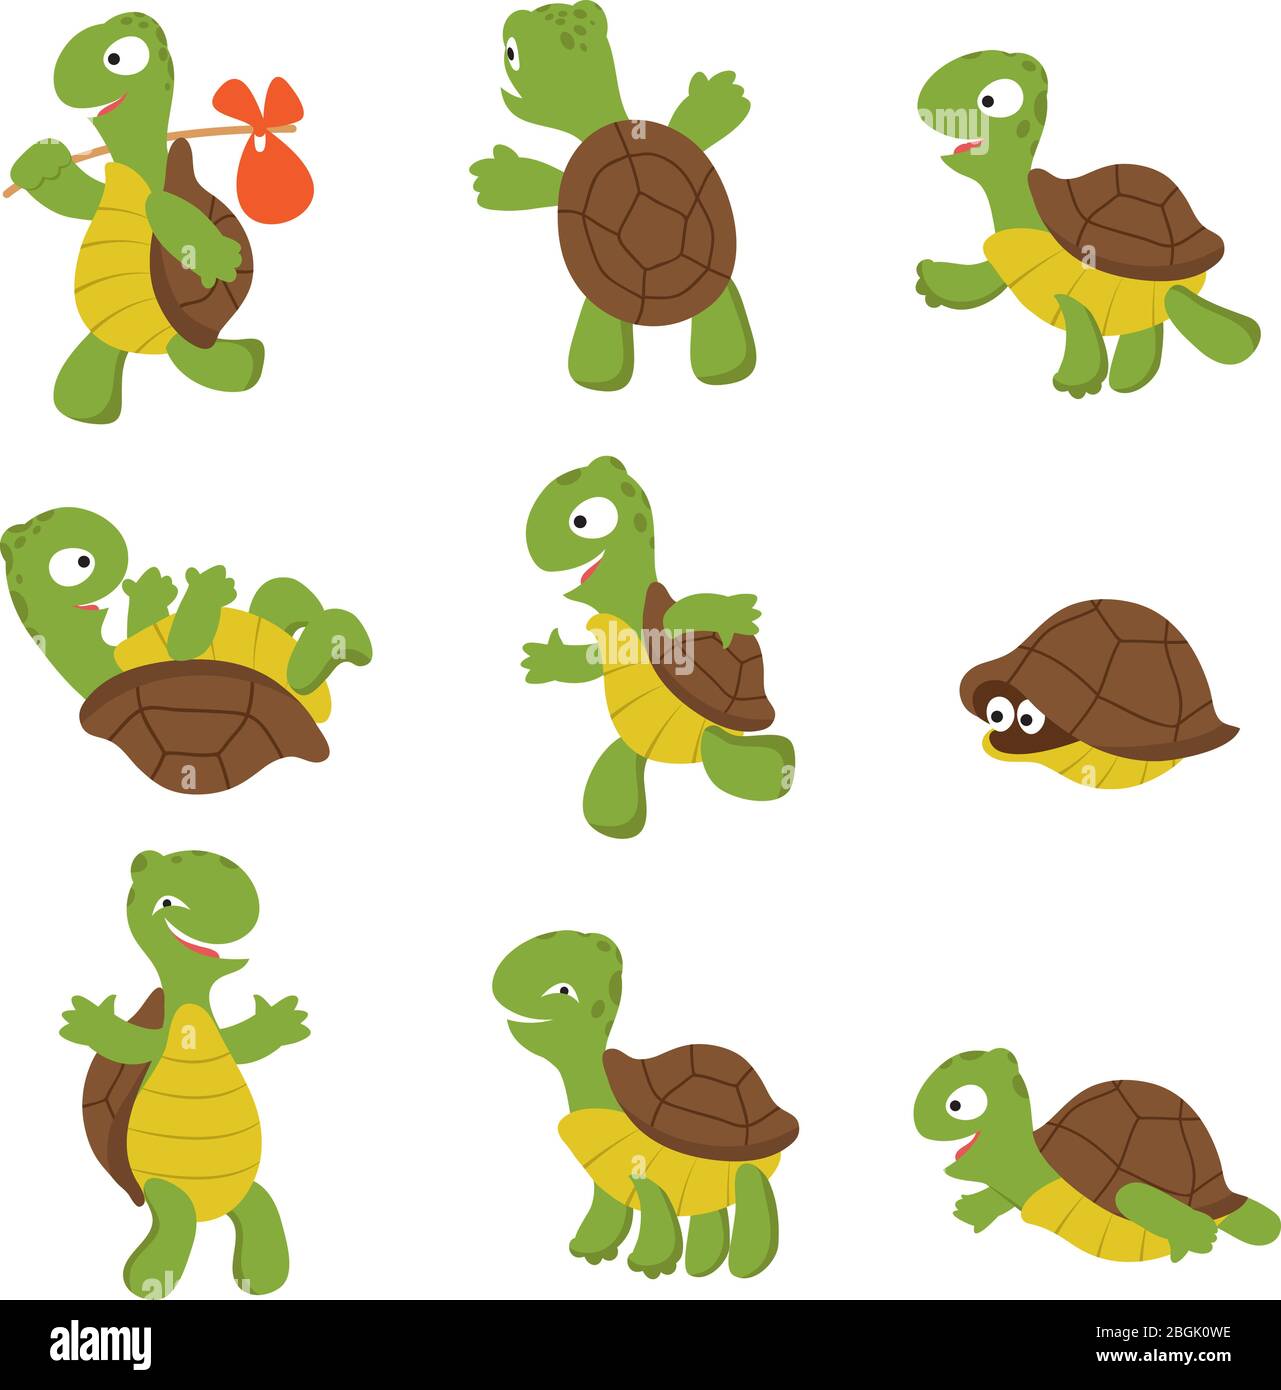 Tortue de bande dessinée. Les personnages vectoriels animaux sauvages de la tortue mignonne sont isolés. Faune tortue, terrapin sauvage et illustration lente Illustration de Vecteur